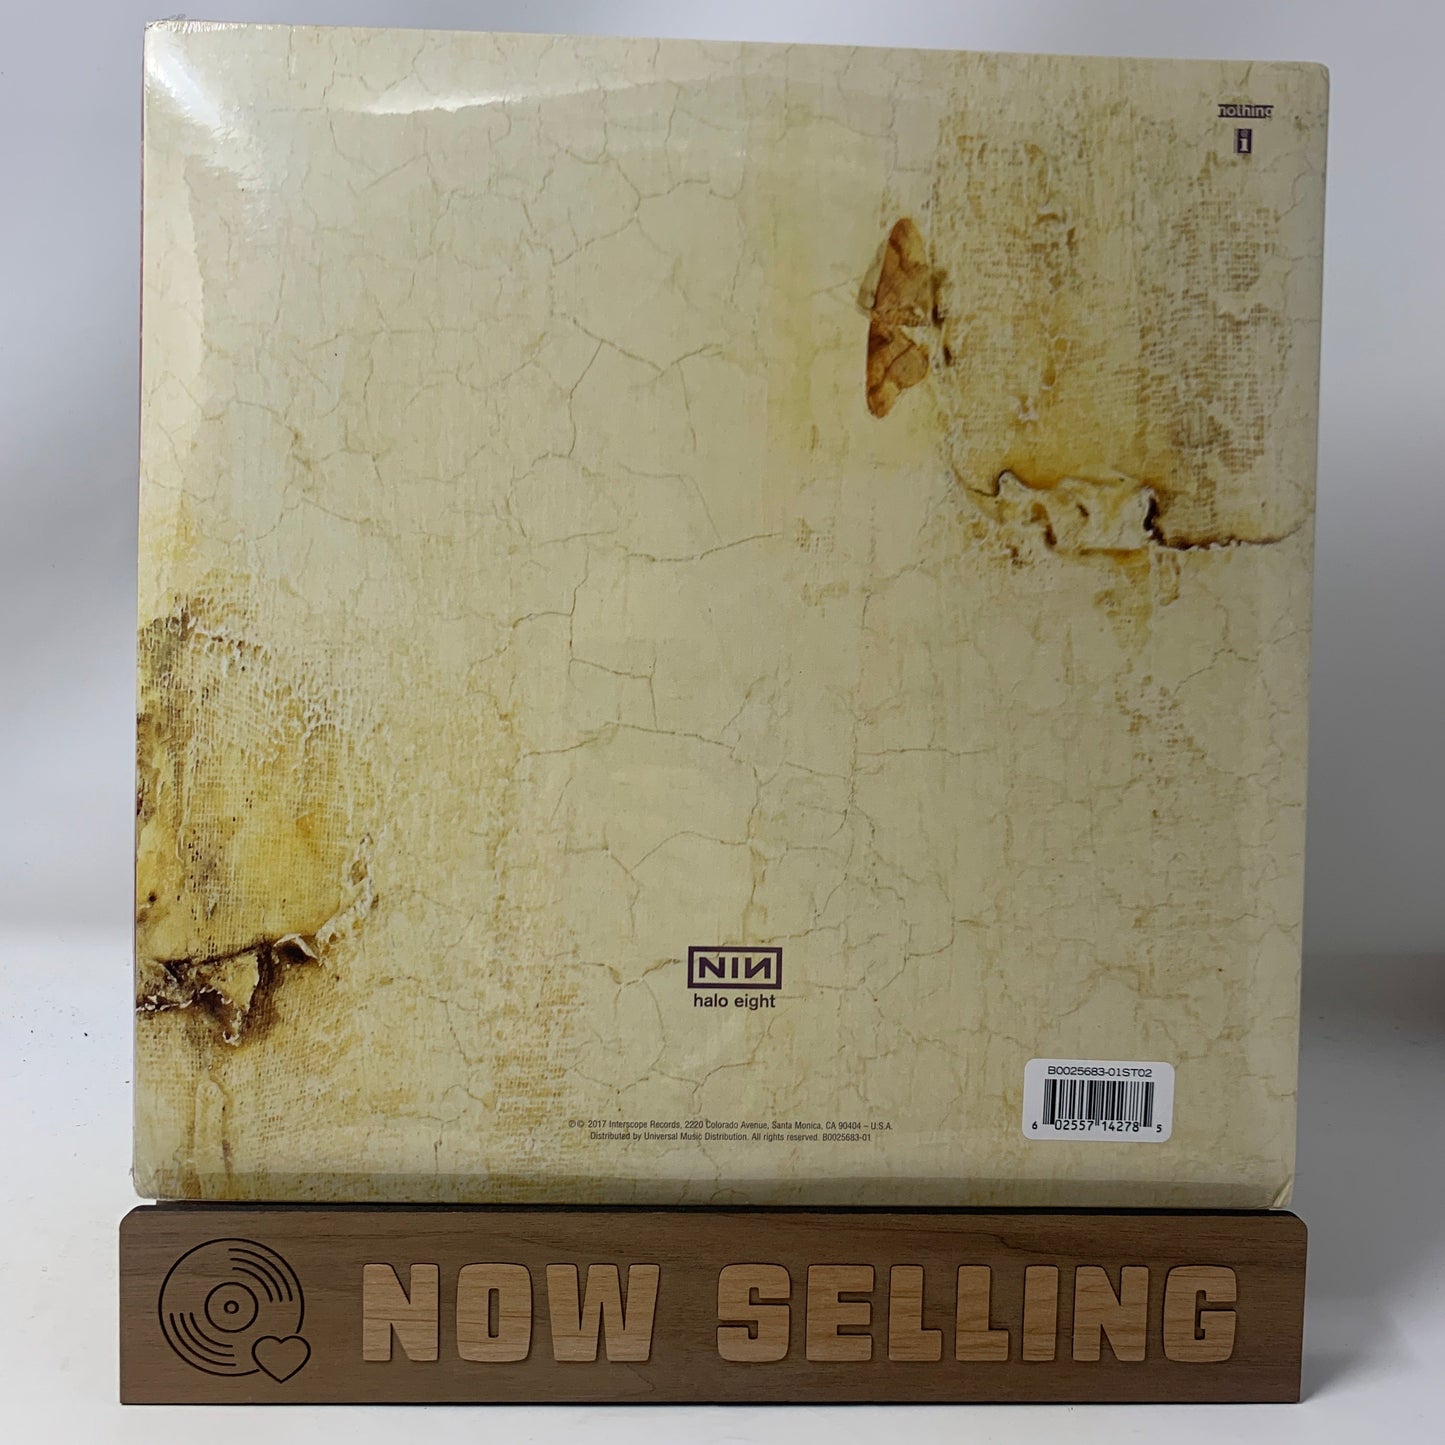 Nine Inch Nails - The Downward Spiral Vinyl LP Definitive Edition SEALED